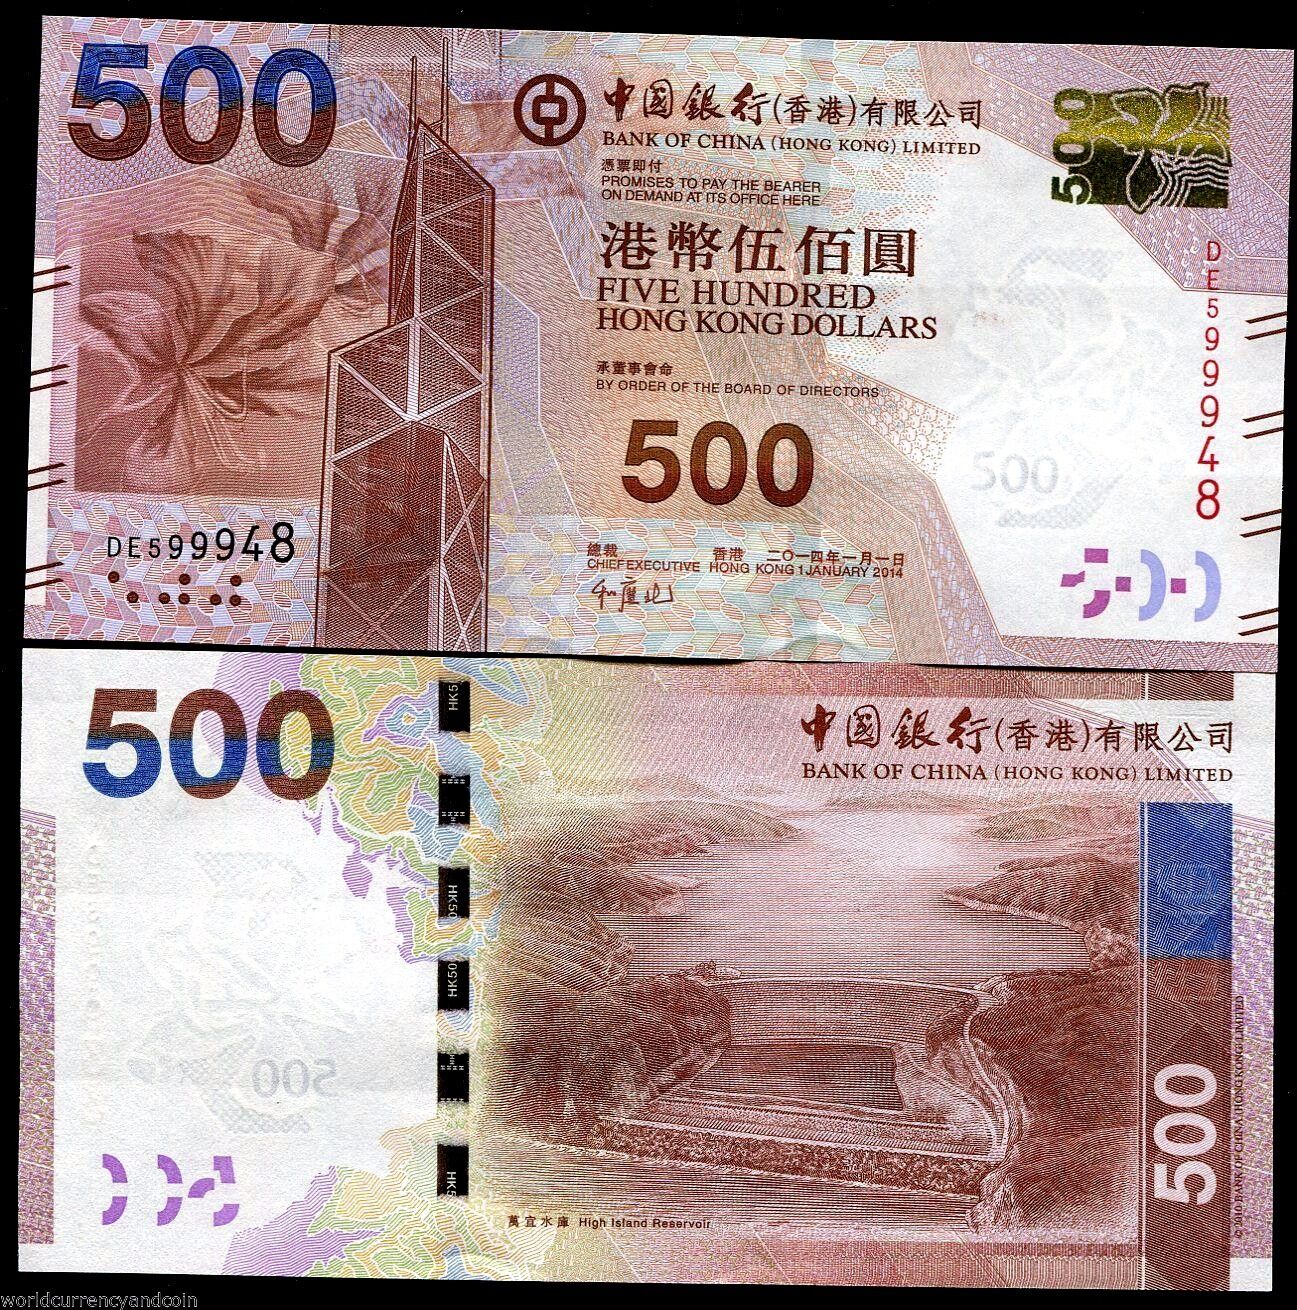 HONG KONG 500 DOLLARS P344 2014 CHINA BOC AIR PLANE CAR UNC MONEY BILL BANK NOTE